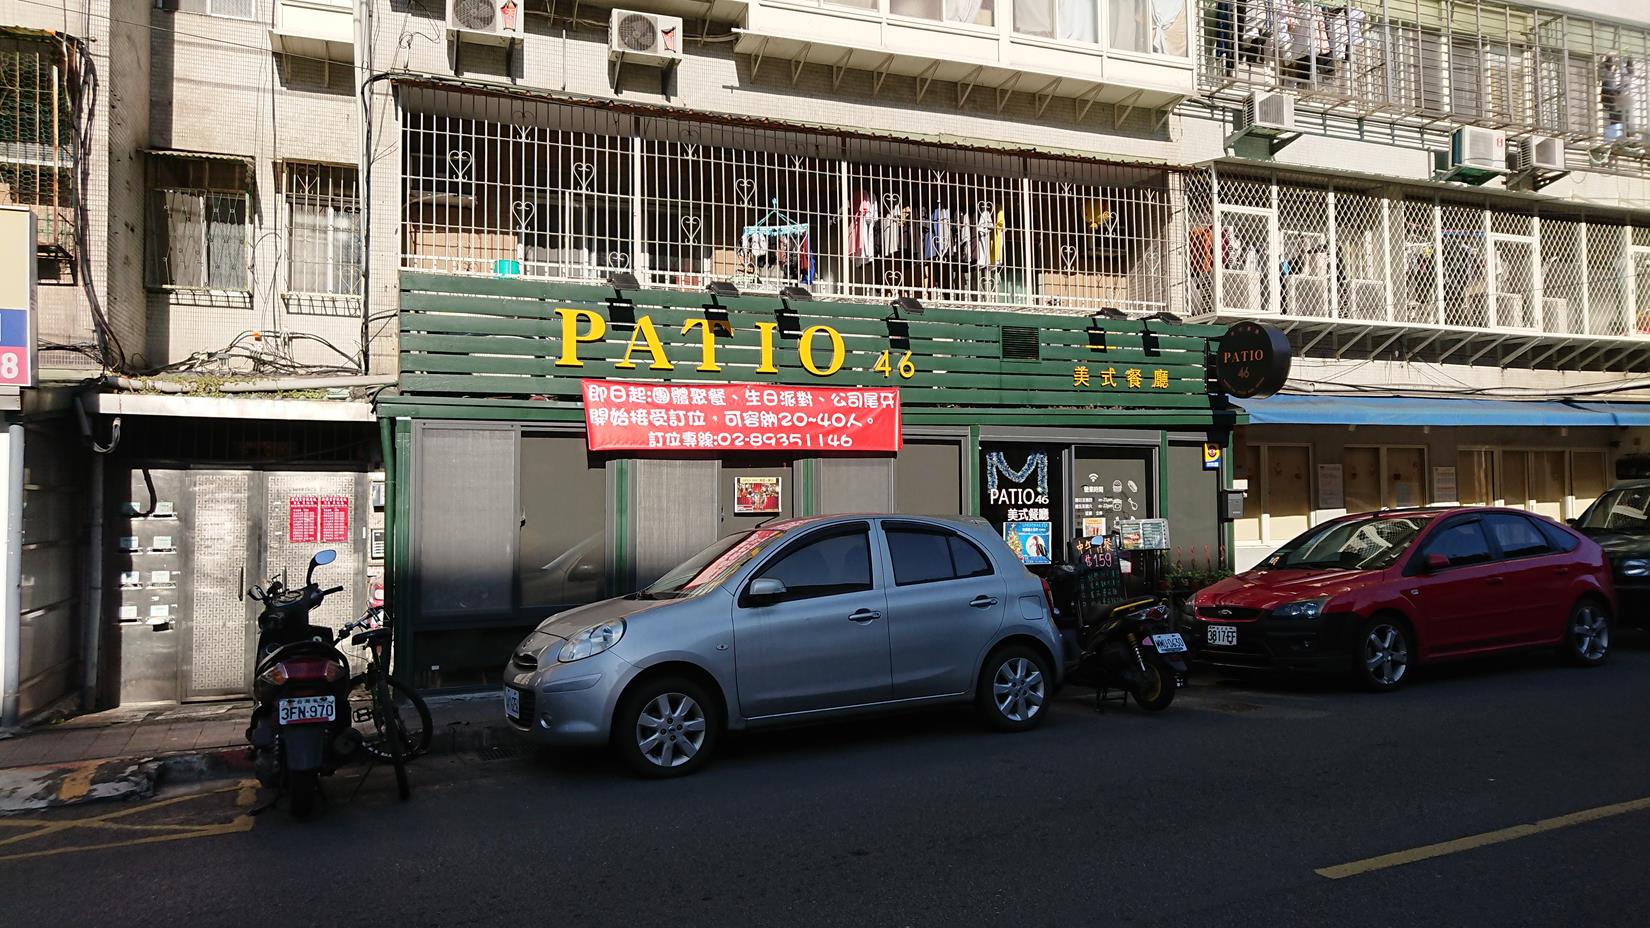 PATIO46 美式餐廳 中國科大 美食